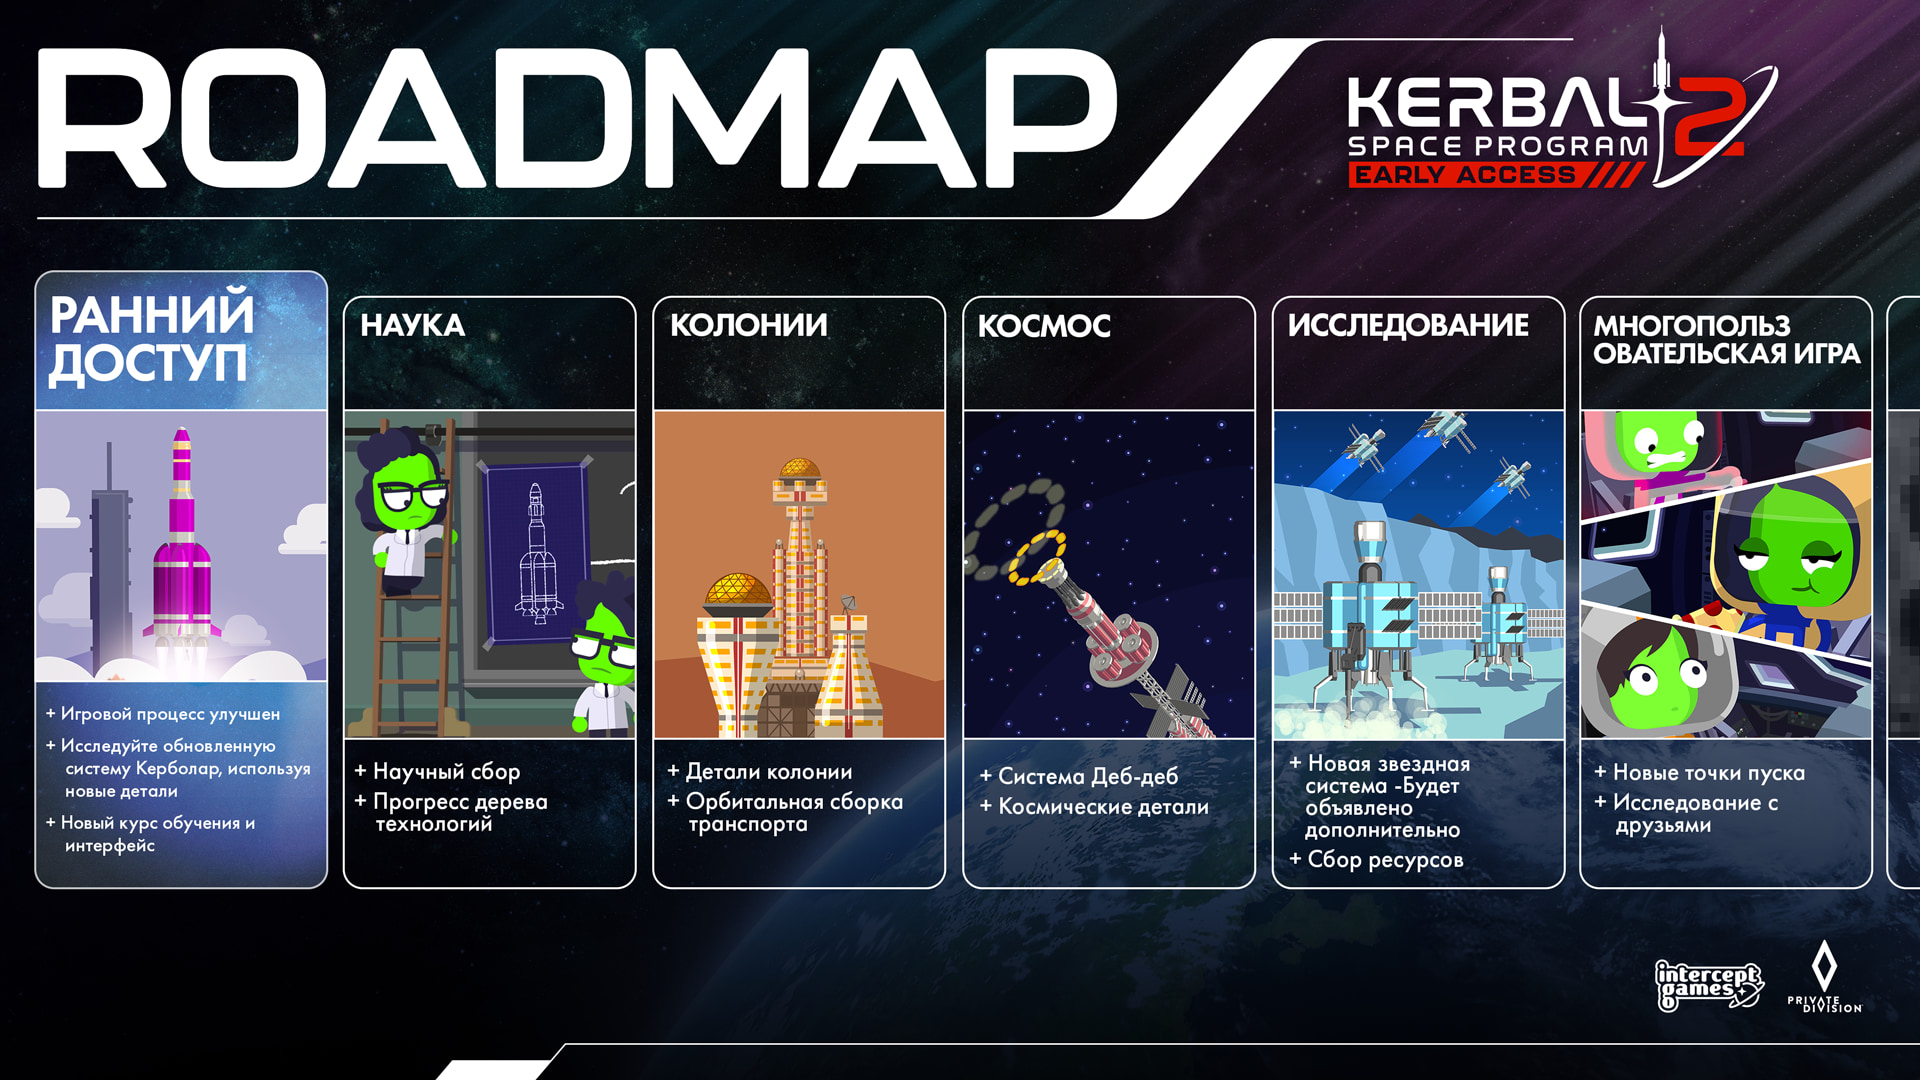 KSP2 Steam About ROADMAP RU